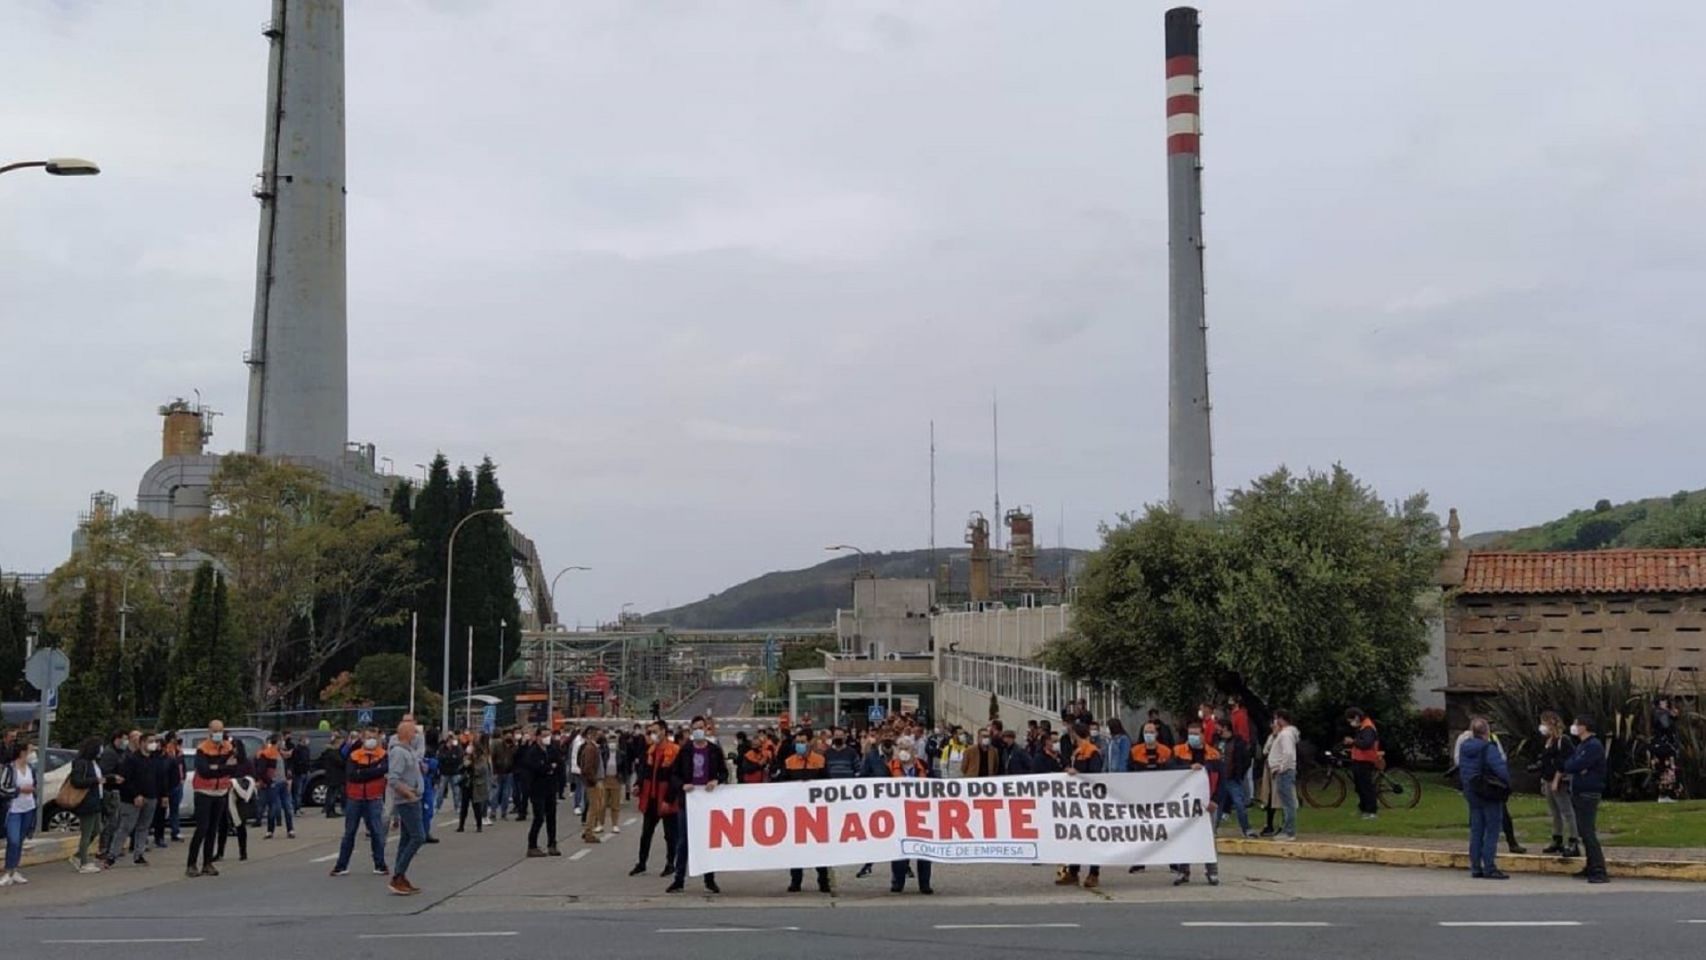 Trabajadores de la refinería de A Coruña en una movilización contra el ERTE.